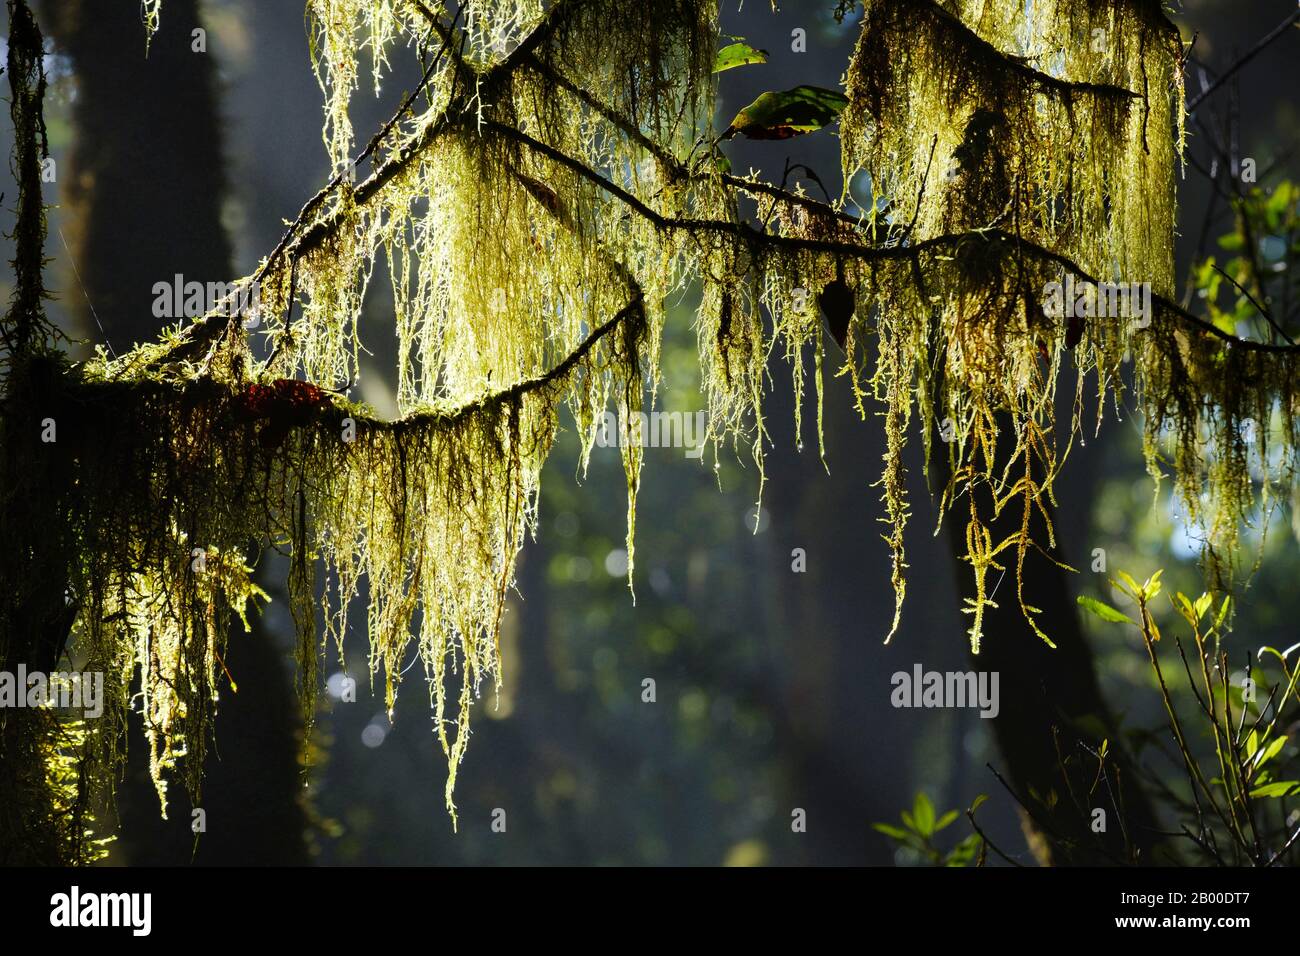 Moss sur les branches de la forêt nuageuse, parc national de Garajonay, la Gomera, îles Canaries, Espagne Banque D'Images